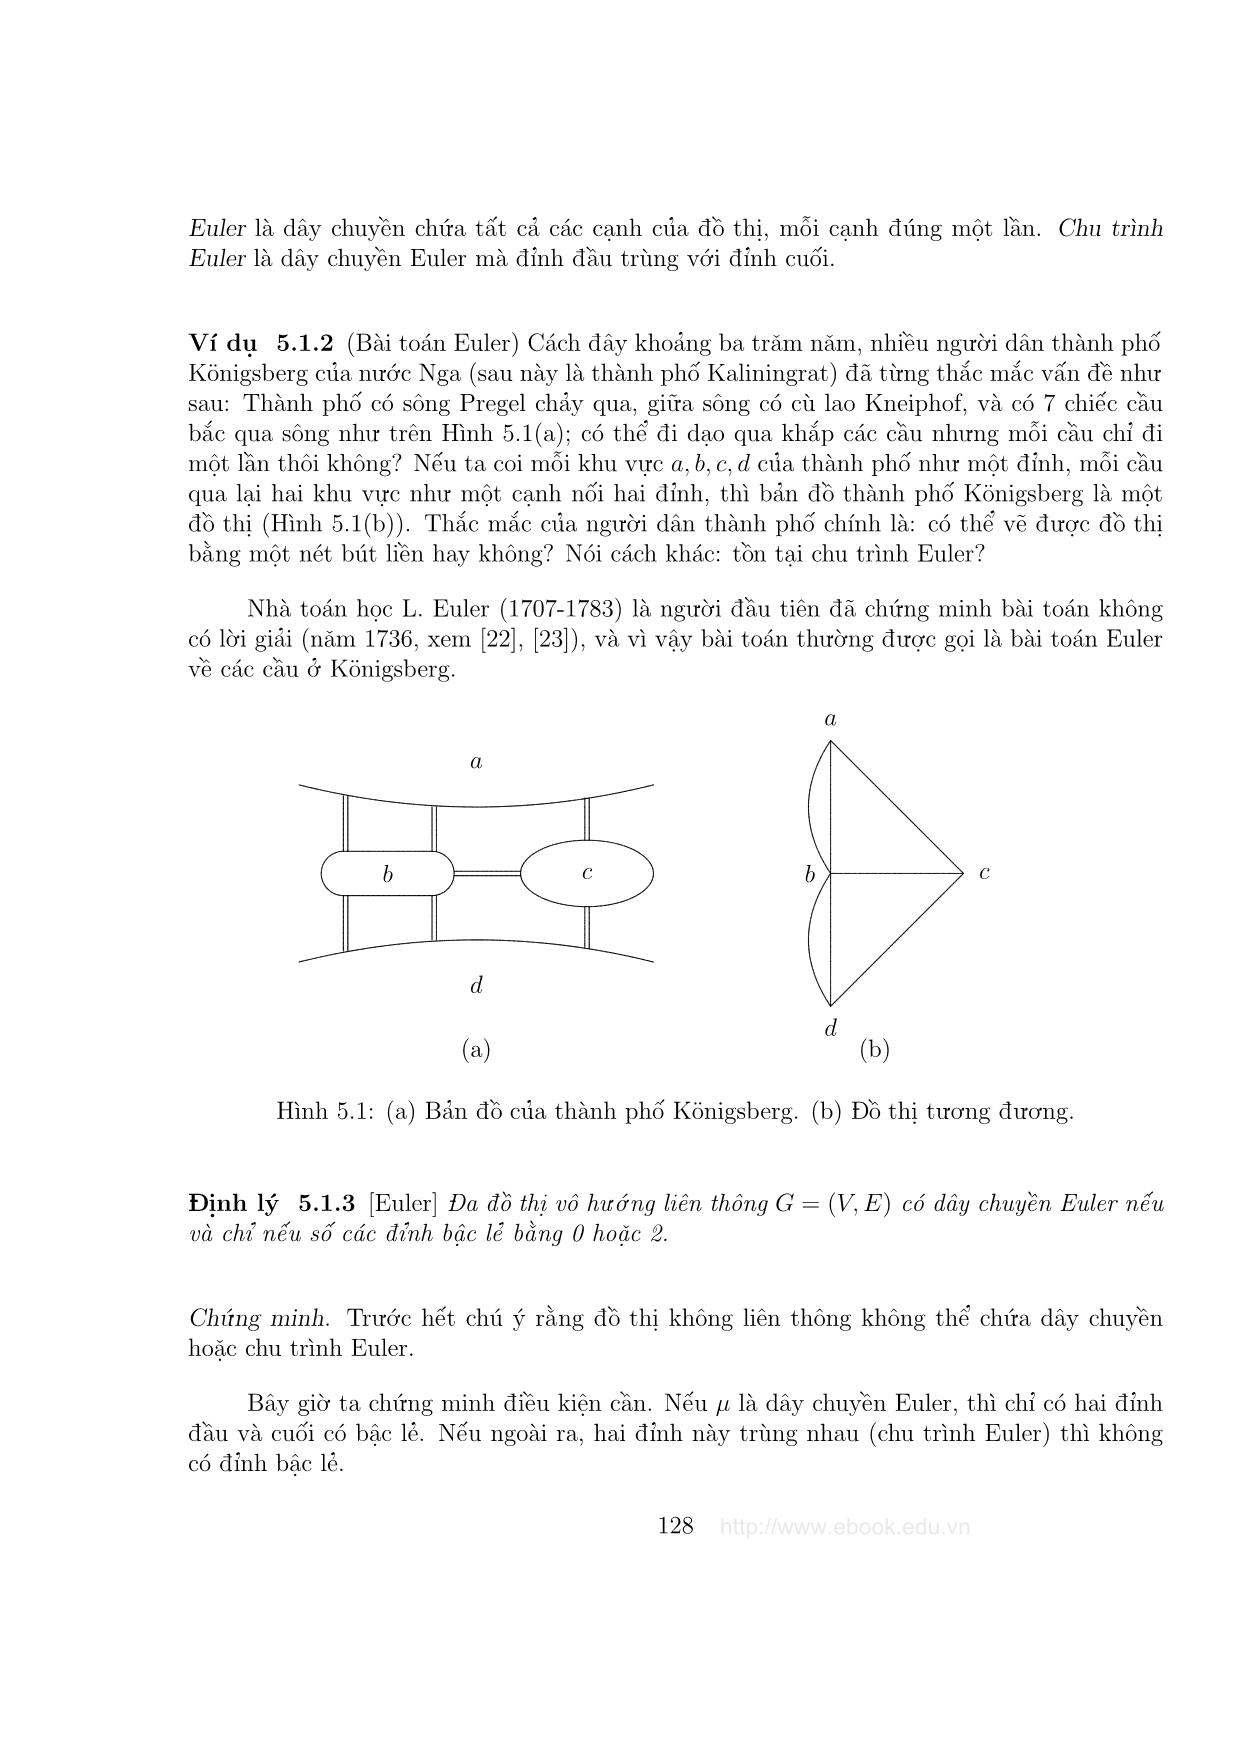 Giáo trình Đồ thị và các thuật toán - Chương 5: Bài toán Euler và bài toán Hamilton trang 2